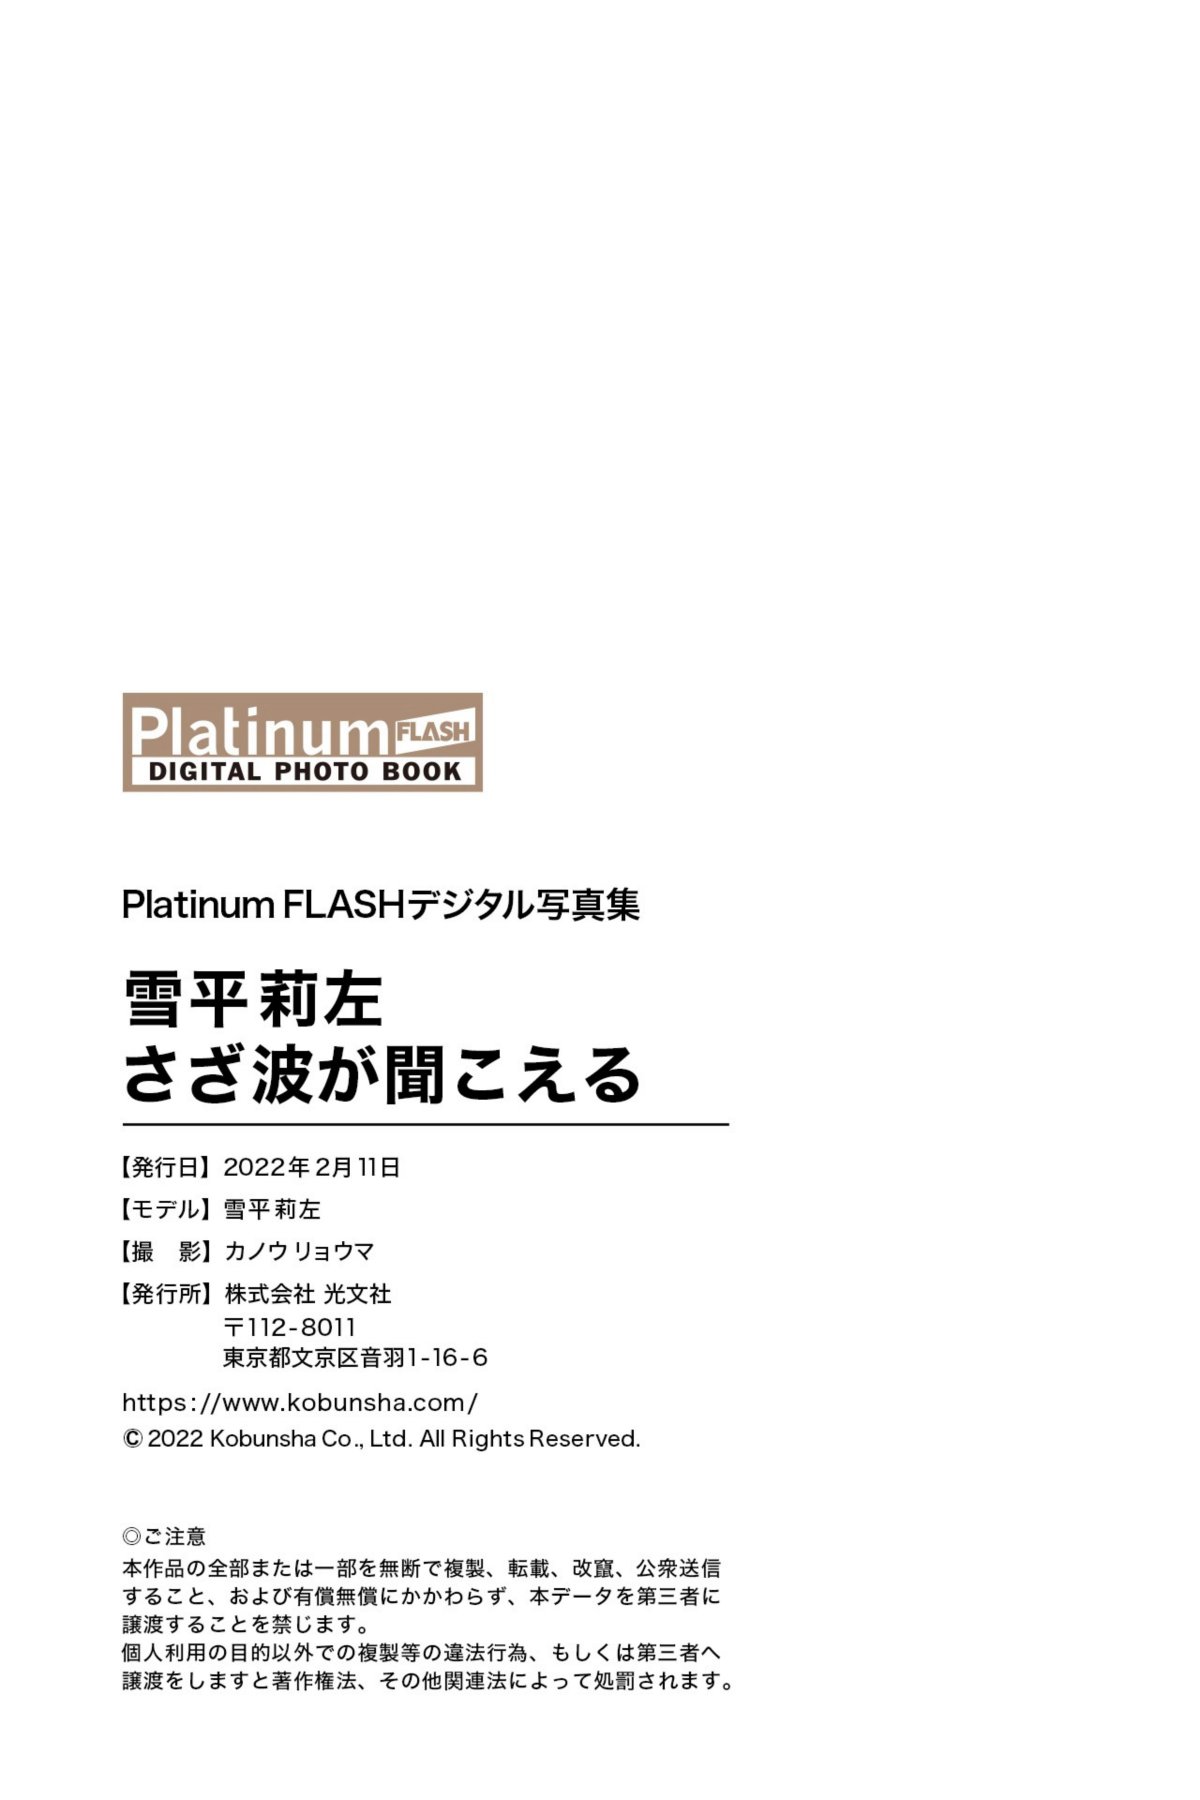 Platinum FLASH Photobook Risa Yukihira 雪平莉左 Ripples can be heard さざ波が聞こえる 2022 02 11 0057 7400621841.jpg